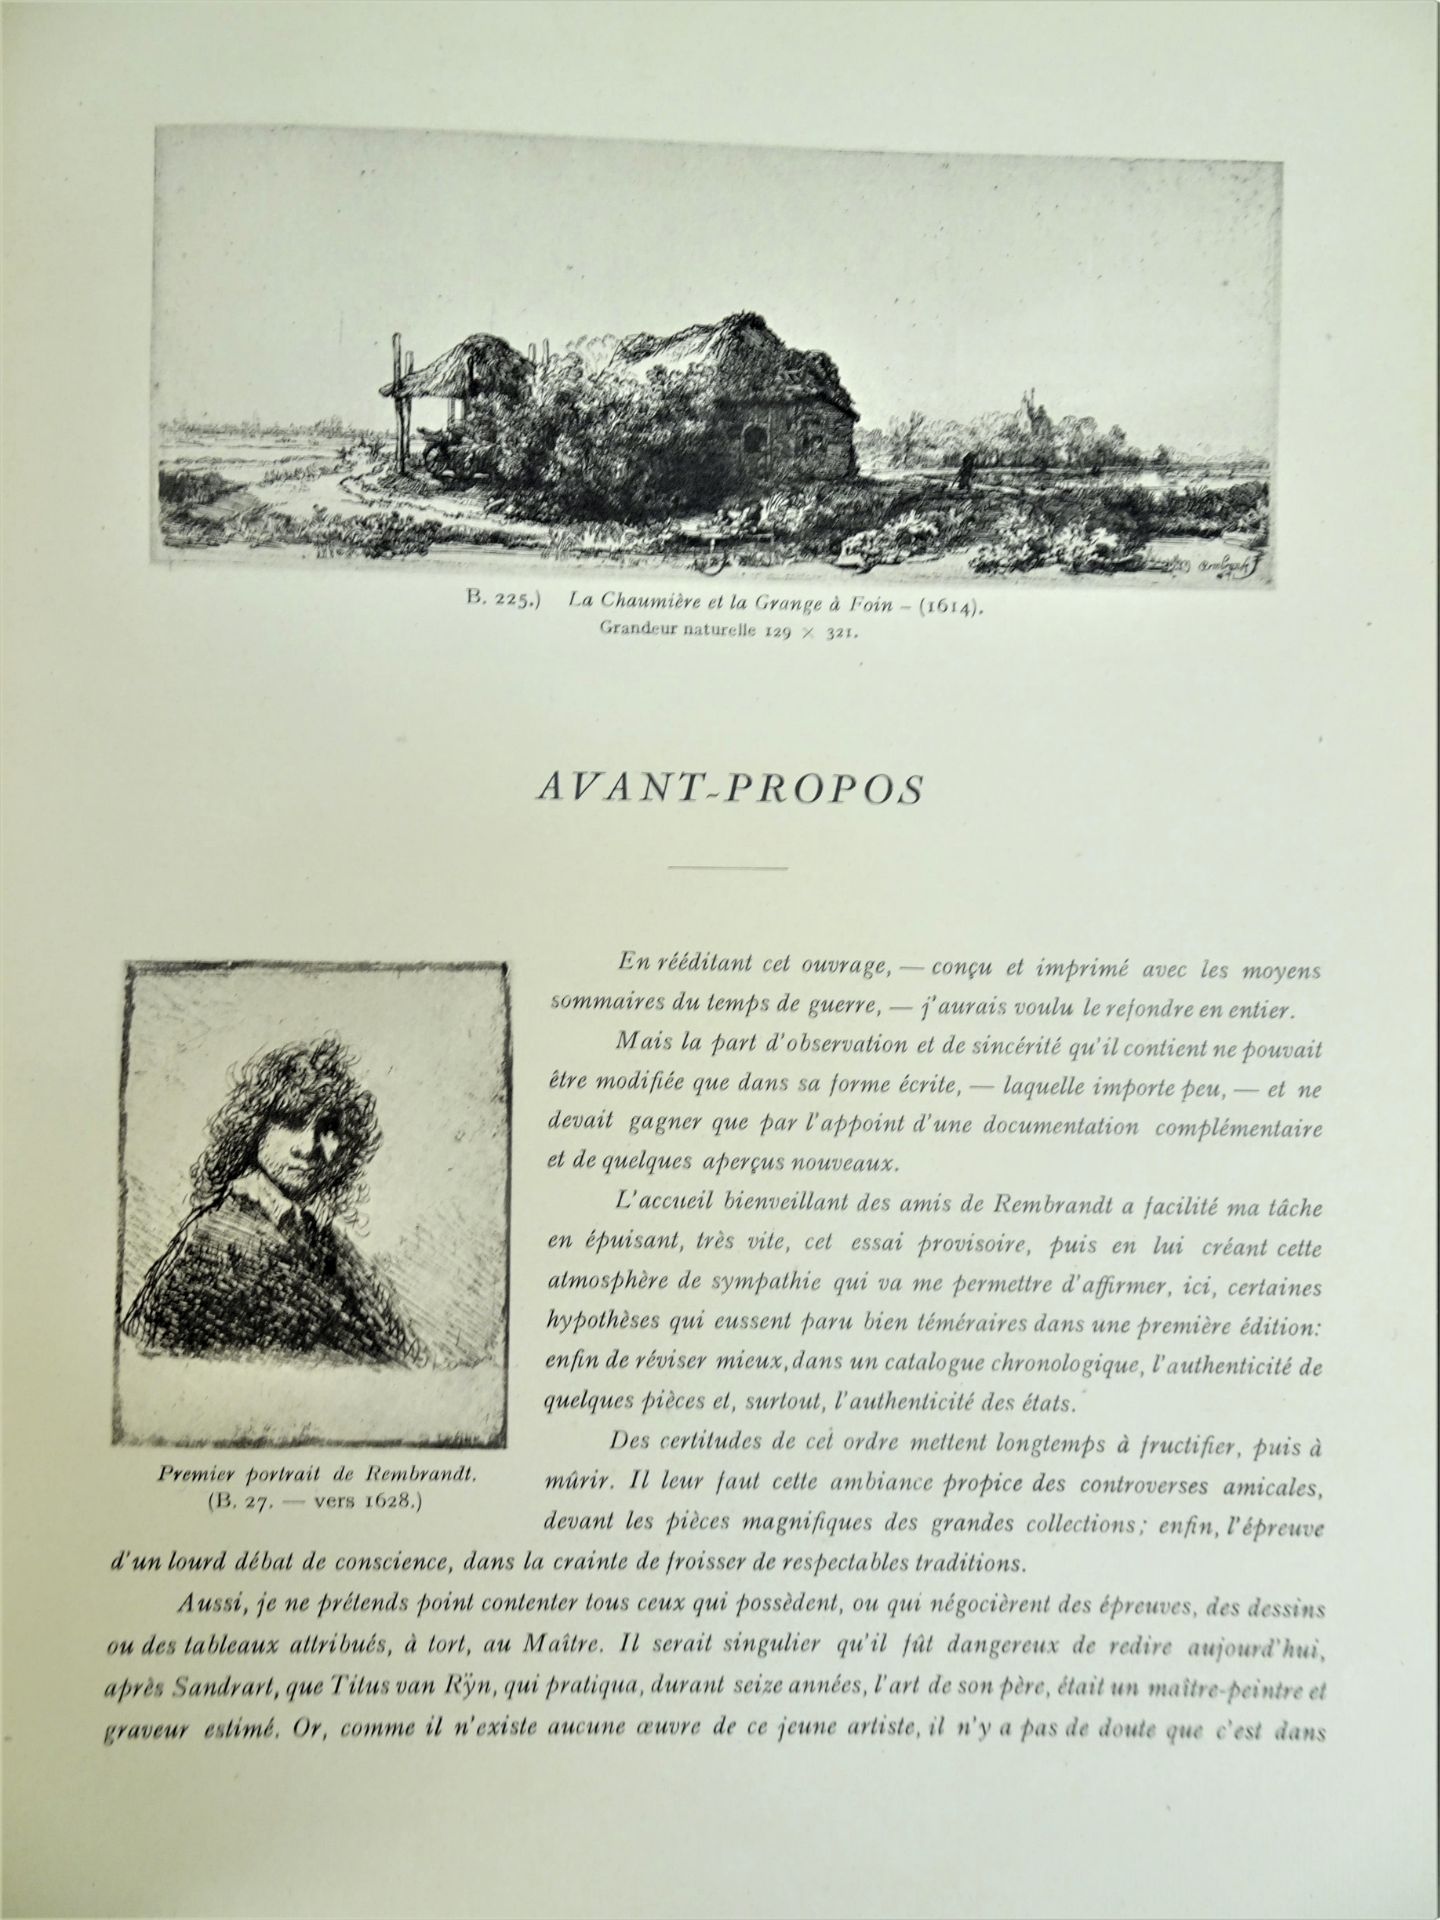 |Art|André Charles Coppier, "Les eaux-fortes de Rembrandt", 1922, limité. Paris, Armand Colin, " - Image 3 of 15